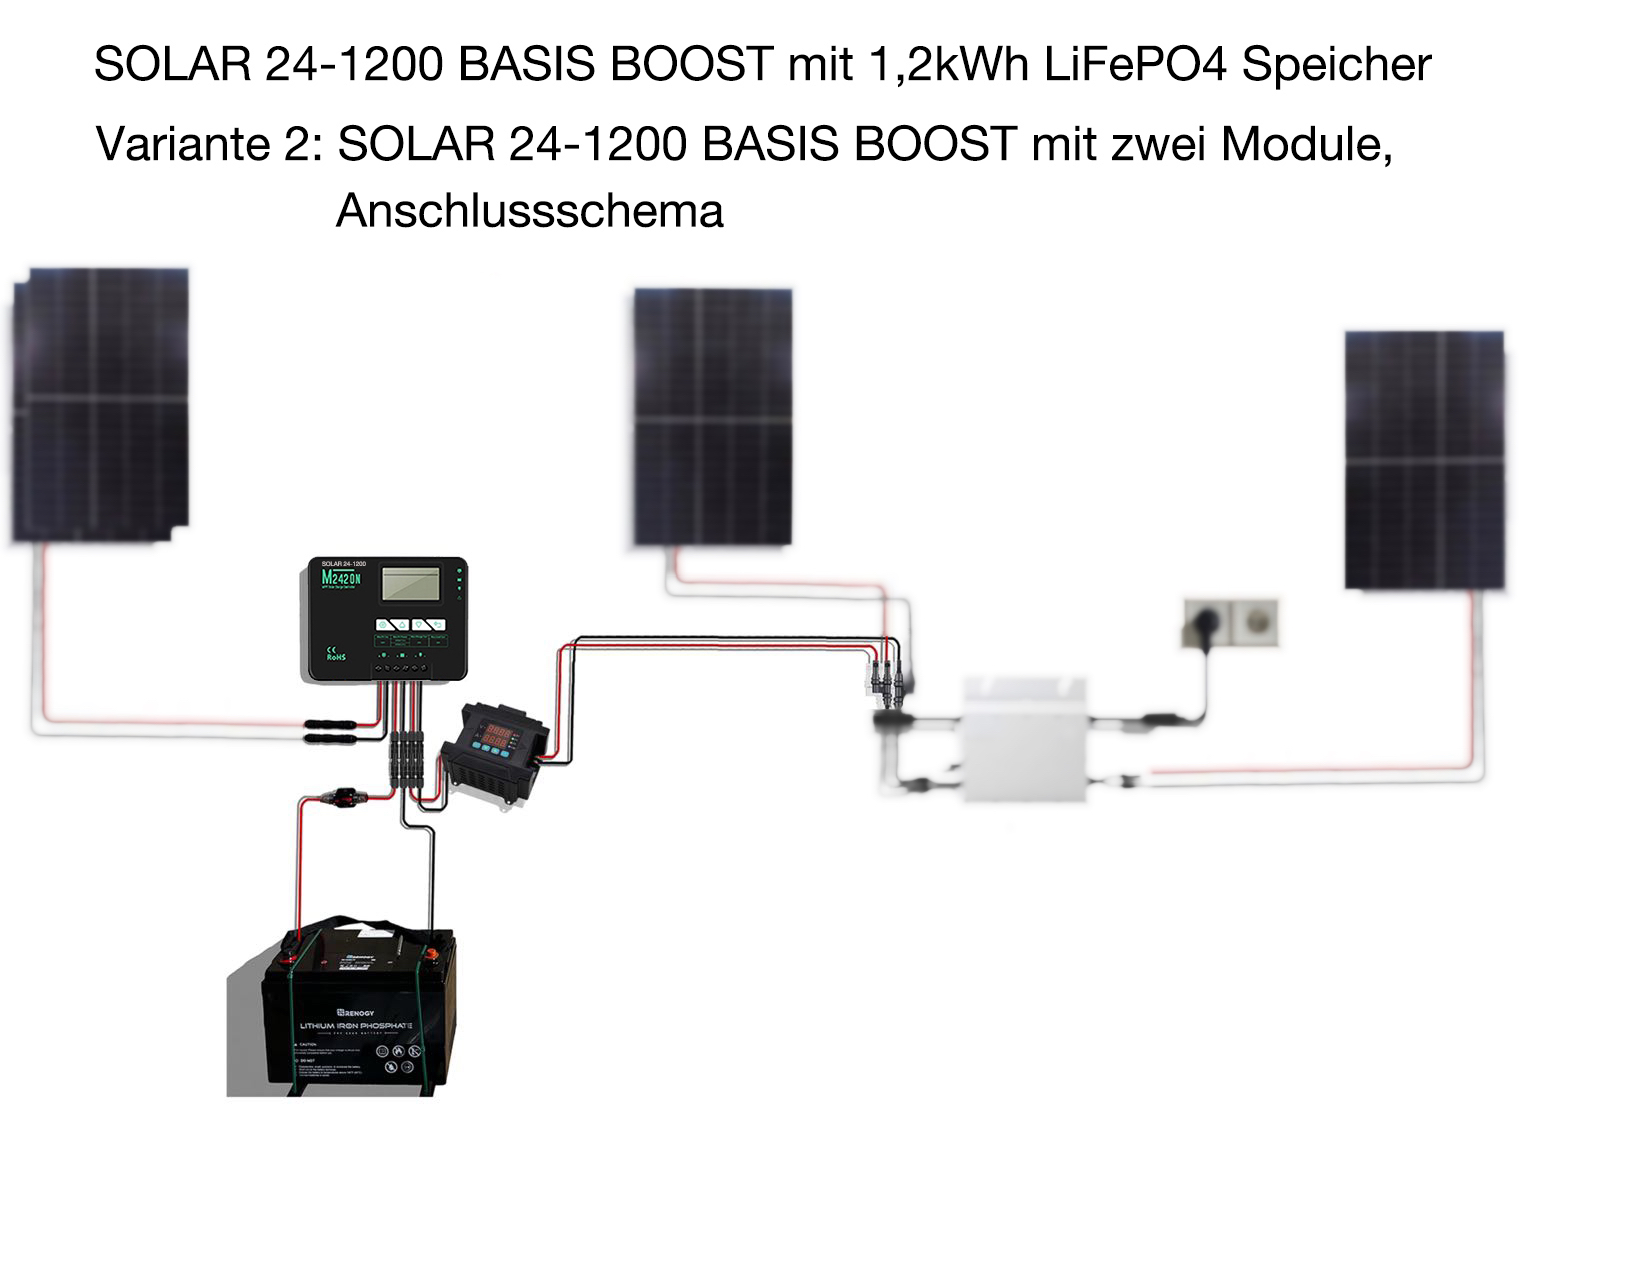 SOLAR 24-1200 BASIS BOOST mit 1,2kWh LiFePO4 Speicher als